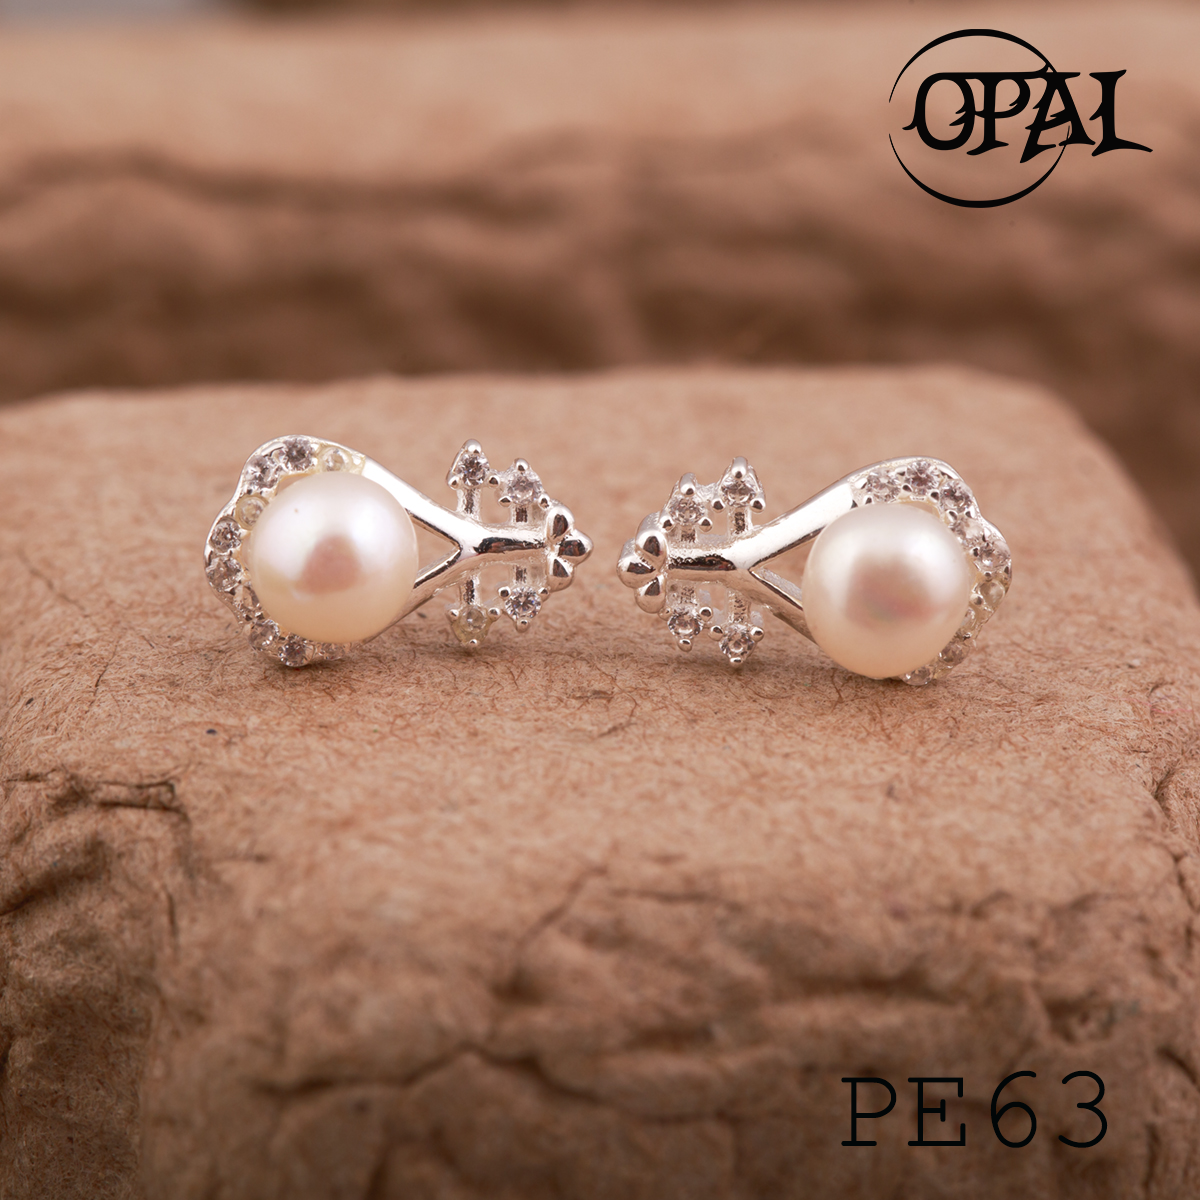  PE63 - Hoa tai bạc đính ngọc trai OPAL 